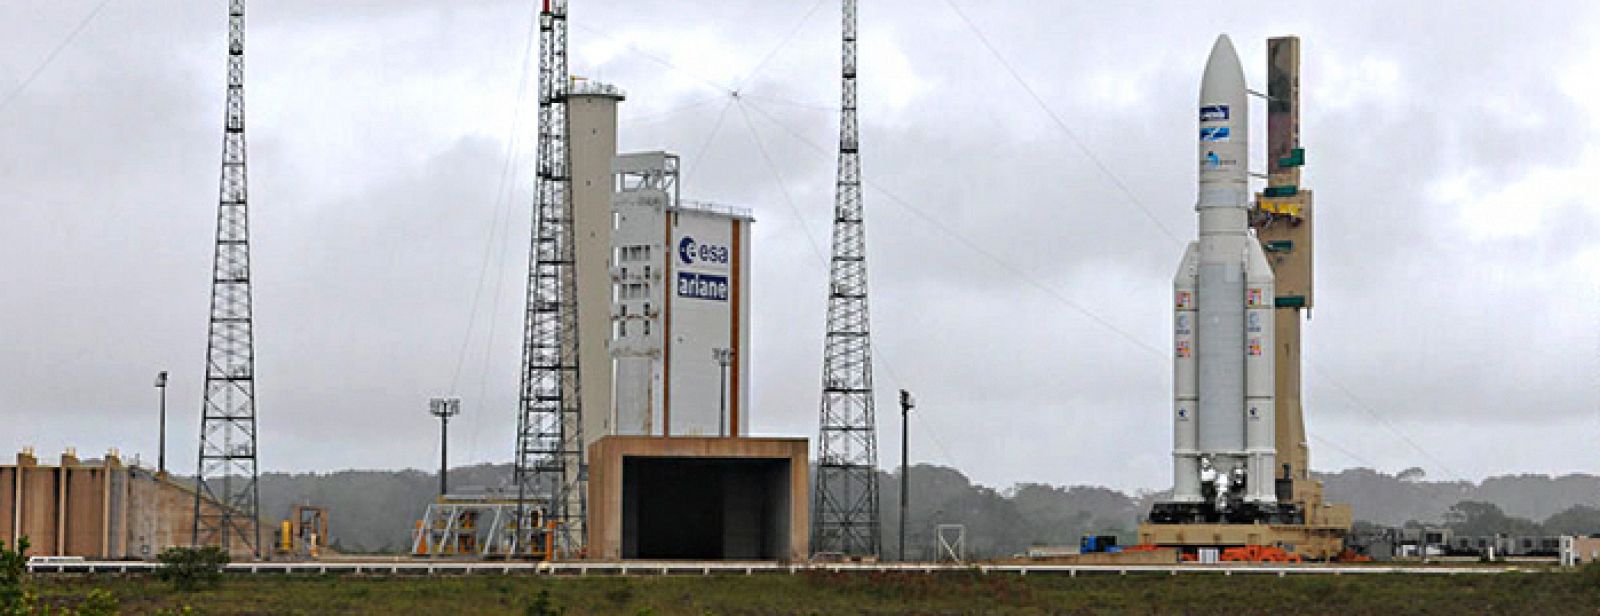 El cohete Ariane 5 ECA, de Arianespace en la plataforma de lanzamiento.